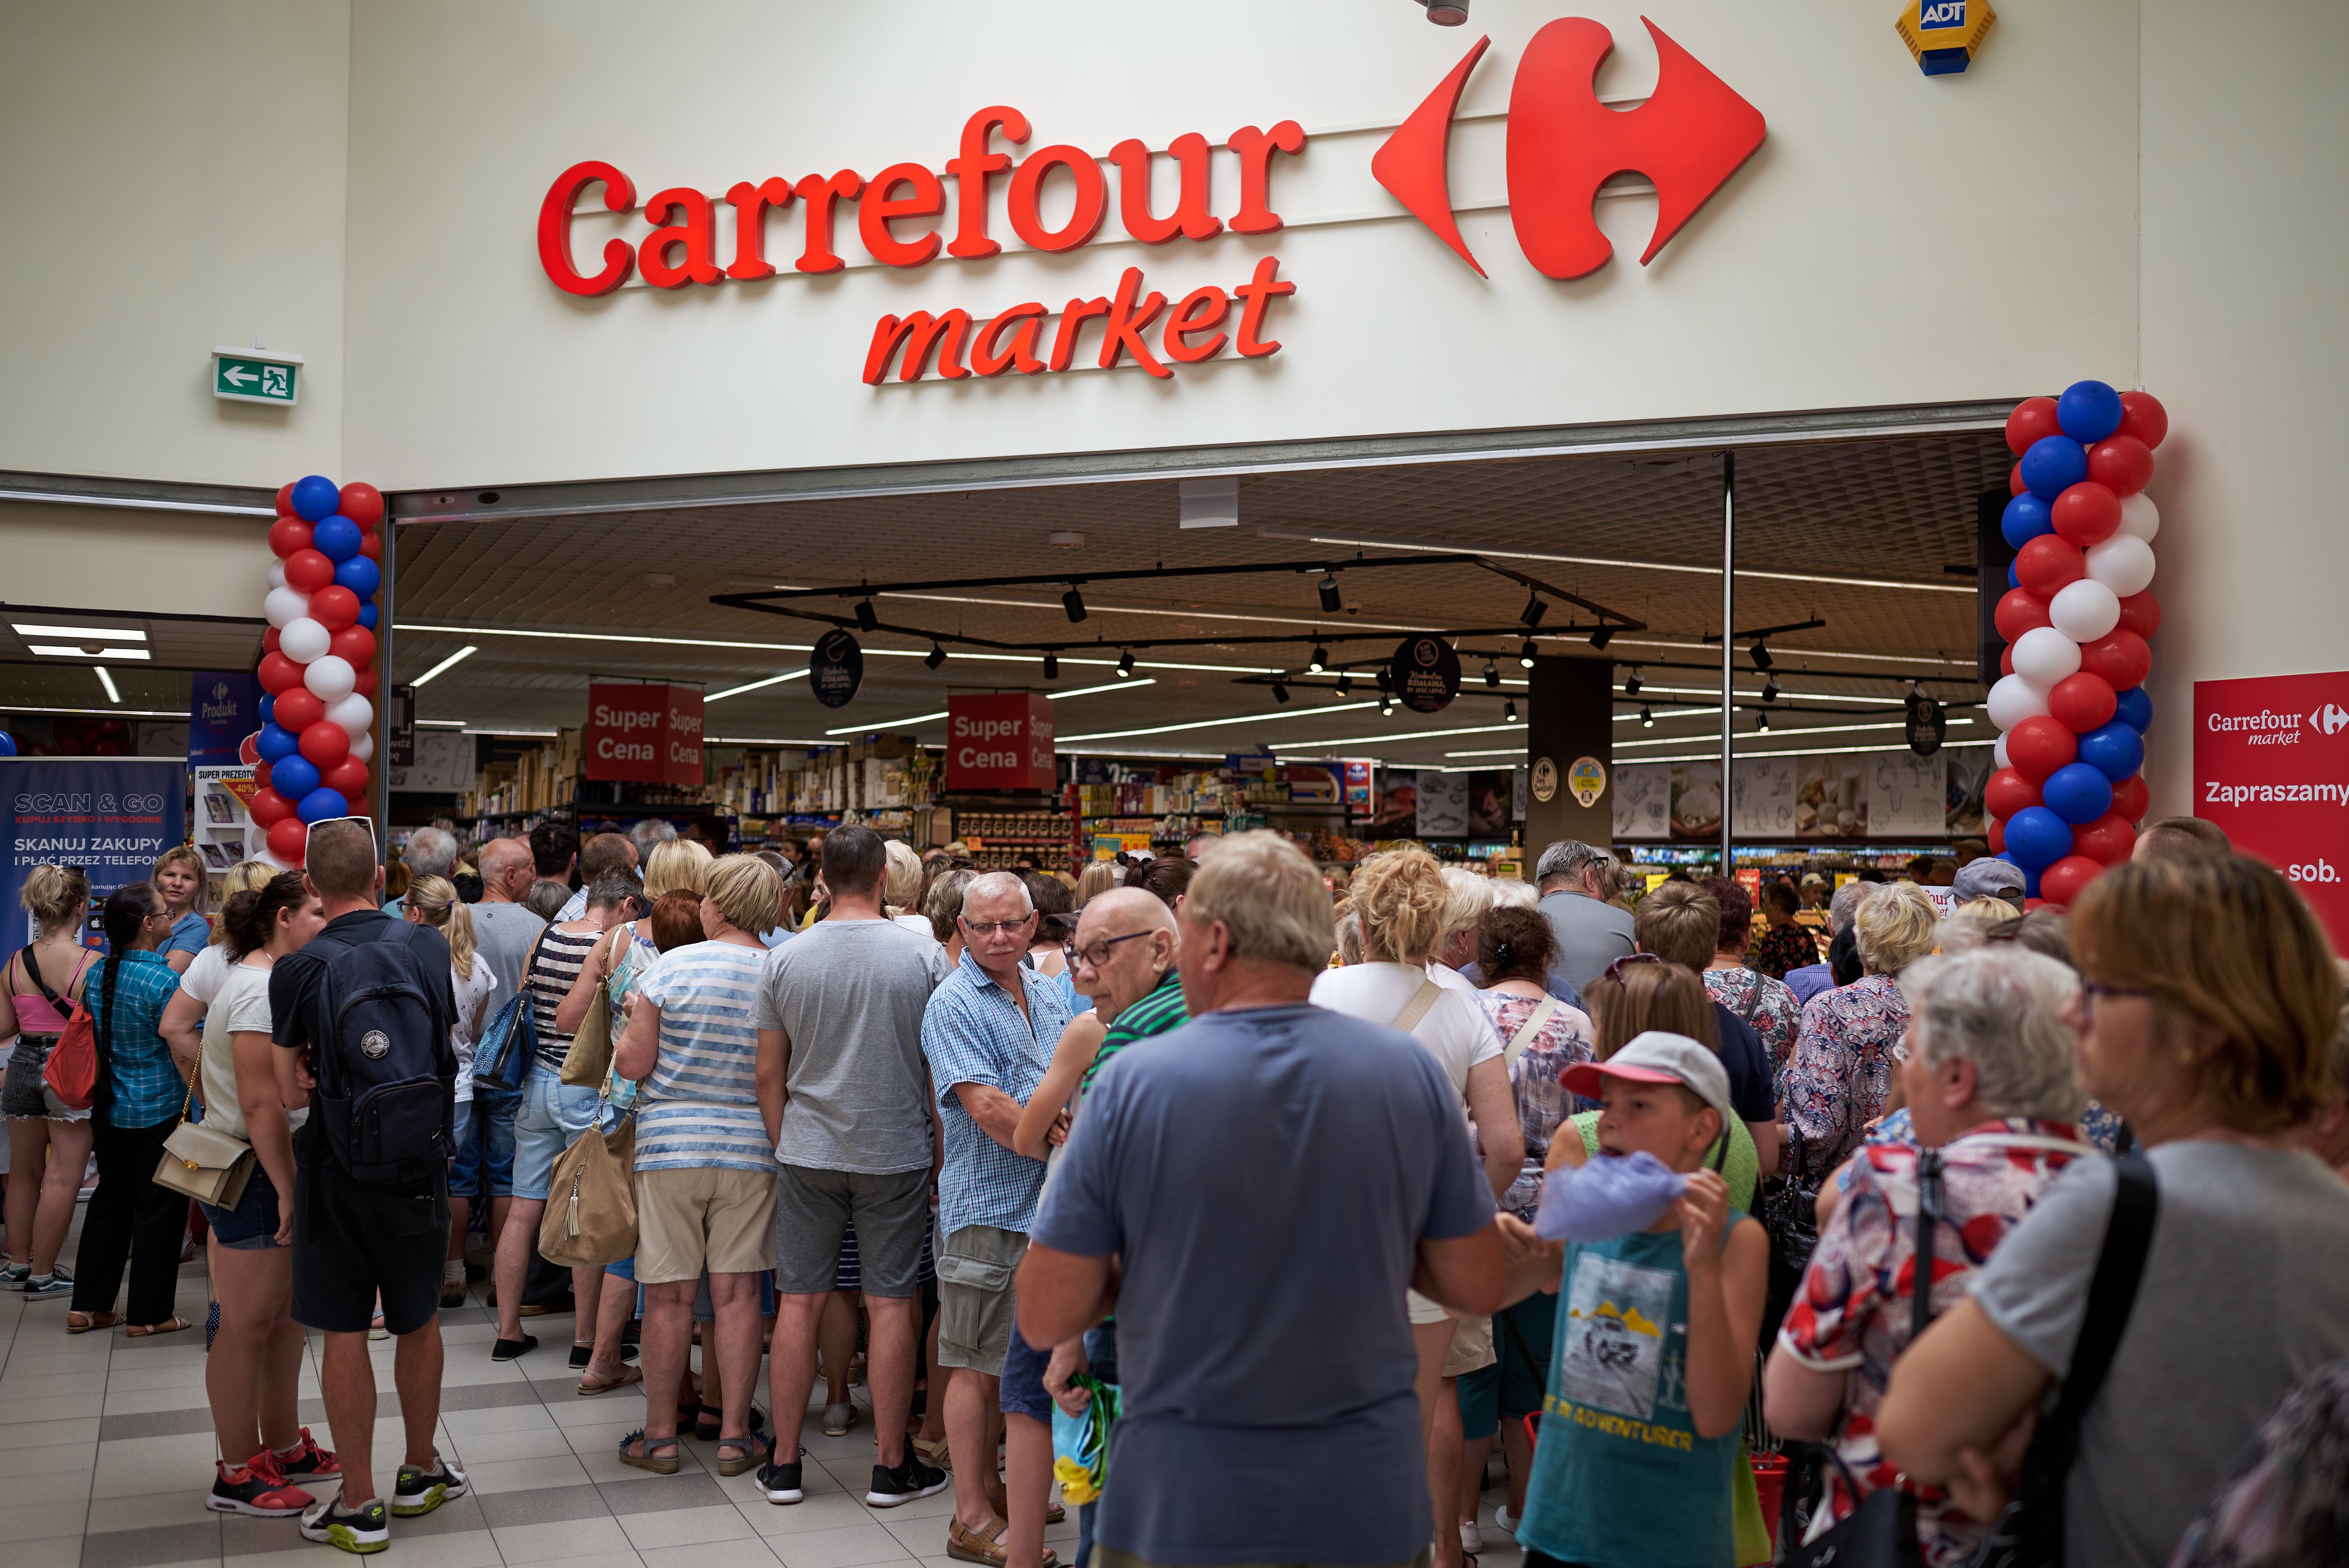 Nowy supermarket Carrefour w Inowrocławiu otwarty!